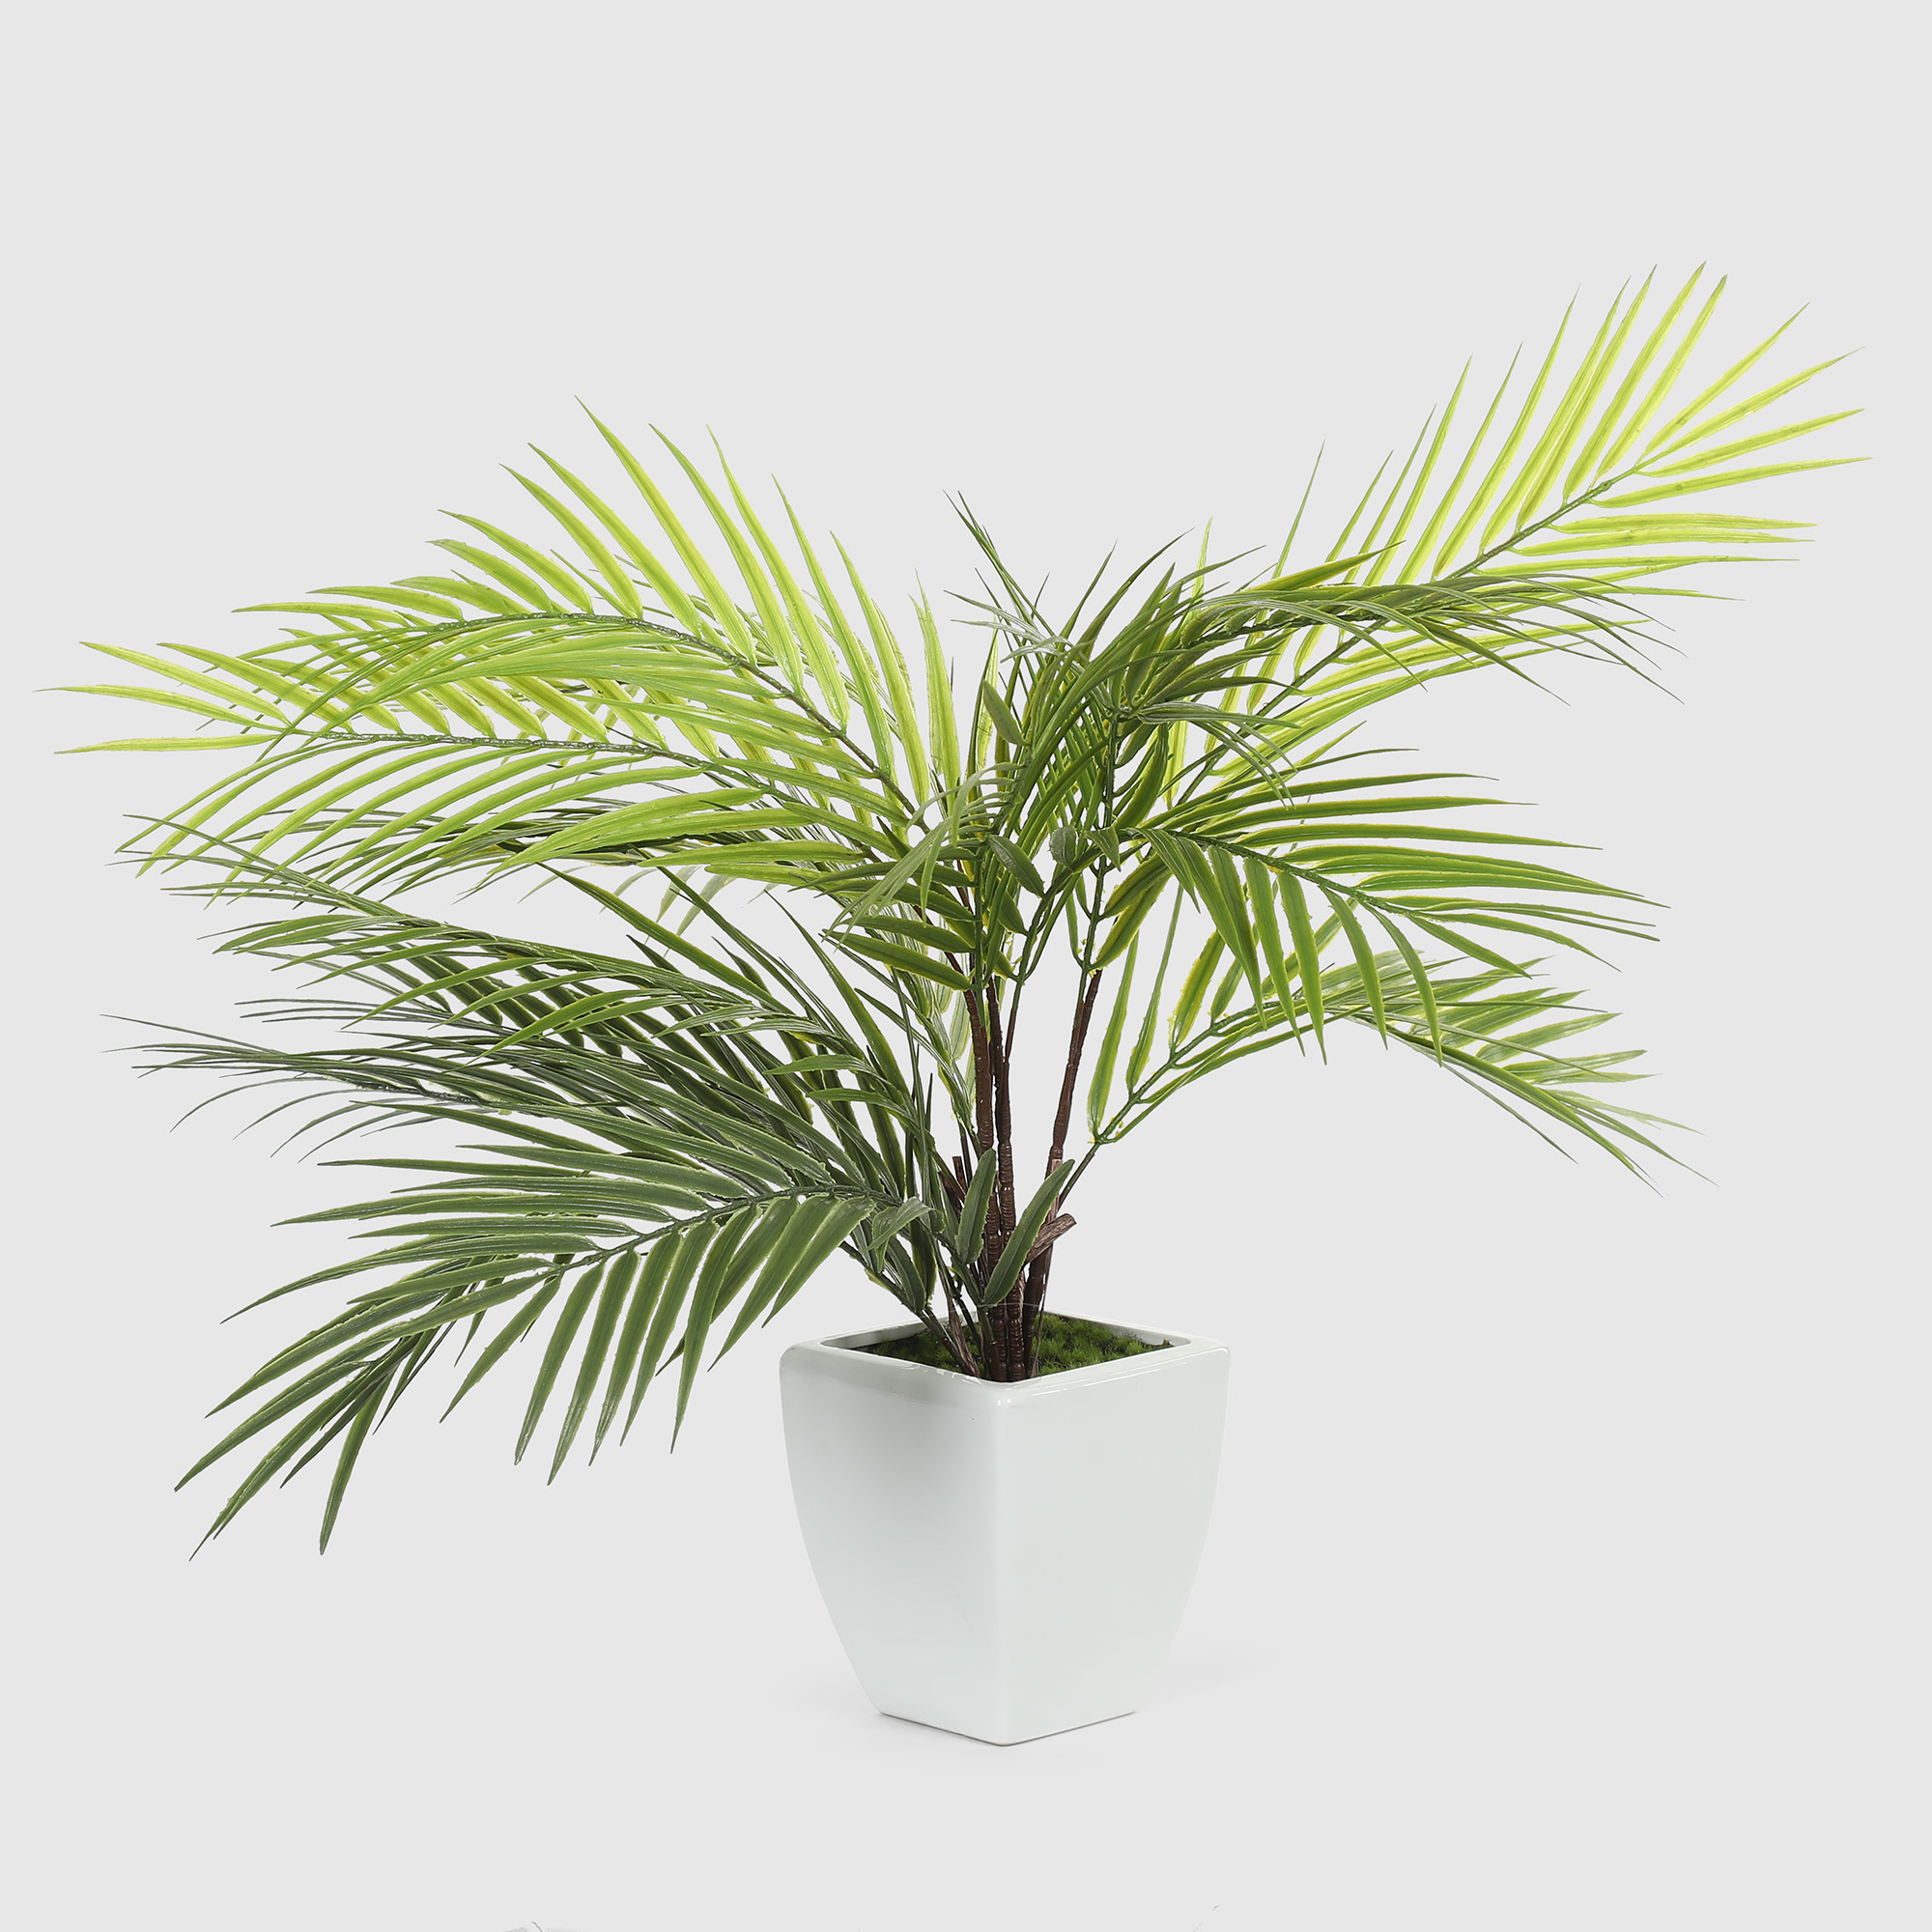 Куст пальмовый в белом кашпо Конэко-О 1013810159 60 см, цвет зеленый